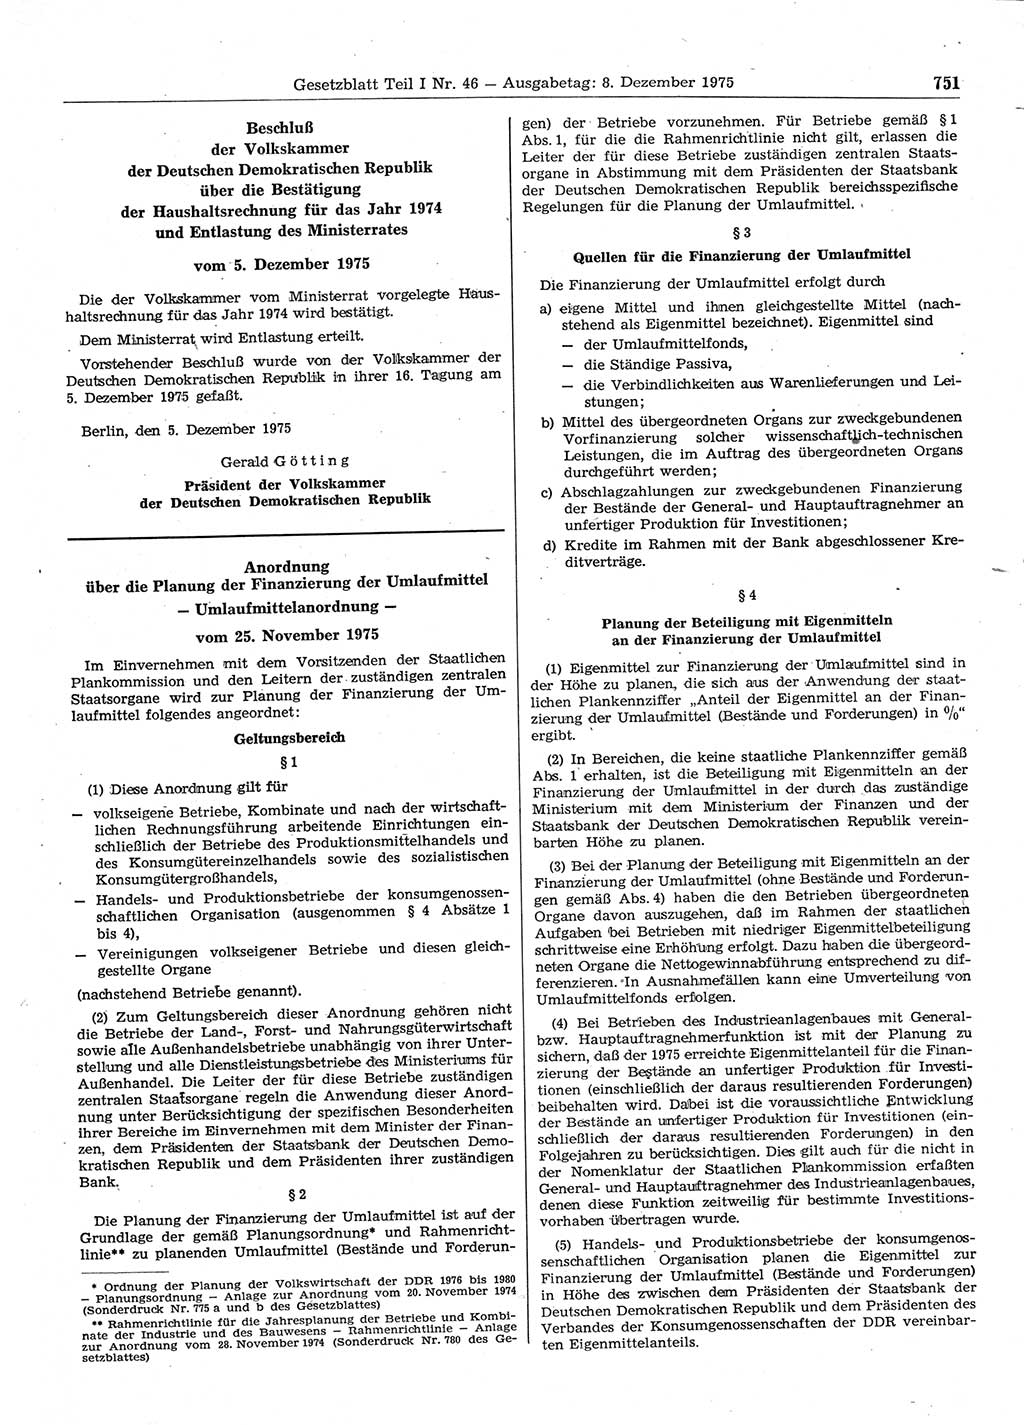 Gesetzblatt (GBl.) der Deutschen Demokratischen Republik (DDR) Teil Ⅰ 1975, Seite 751 (GBl. DDR Ⅰ 1975, S. 751)